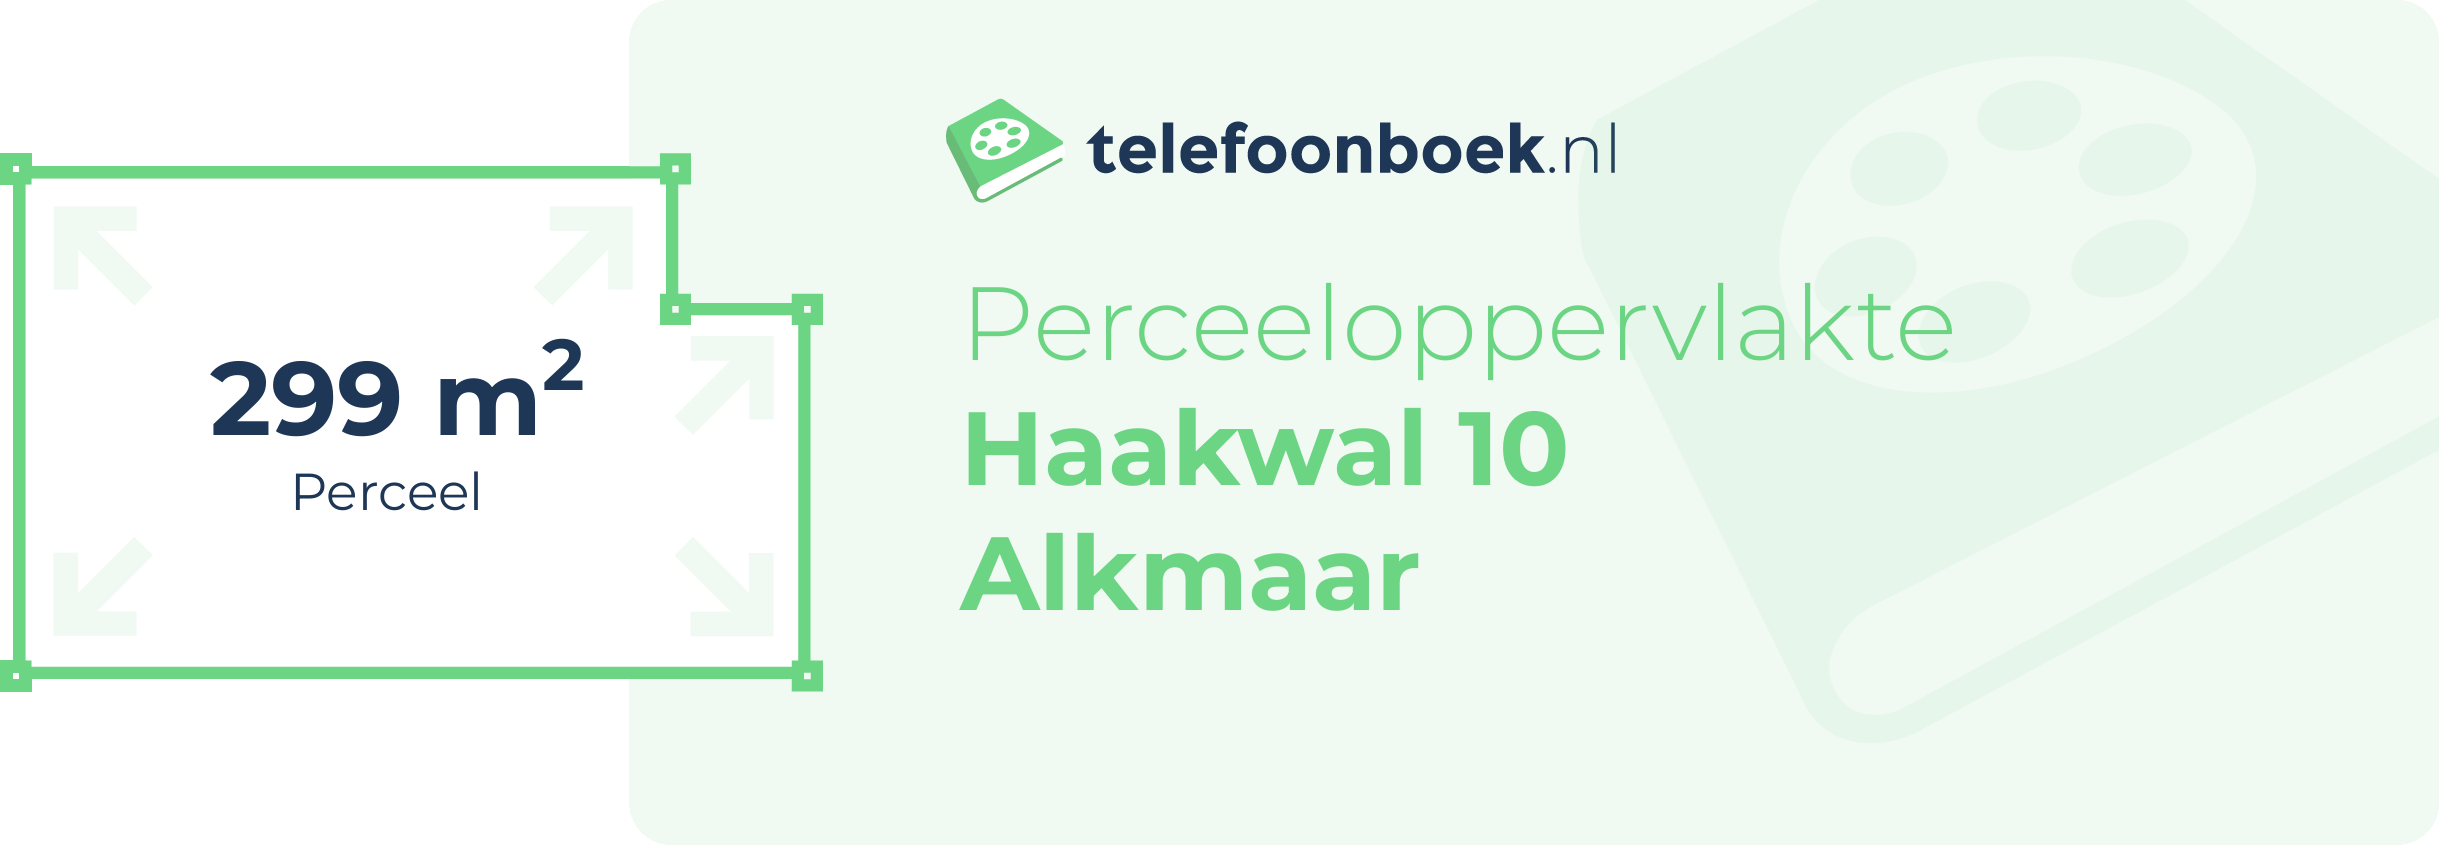 Perceeloppervlakte Haakwal 10 Alkmaar